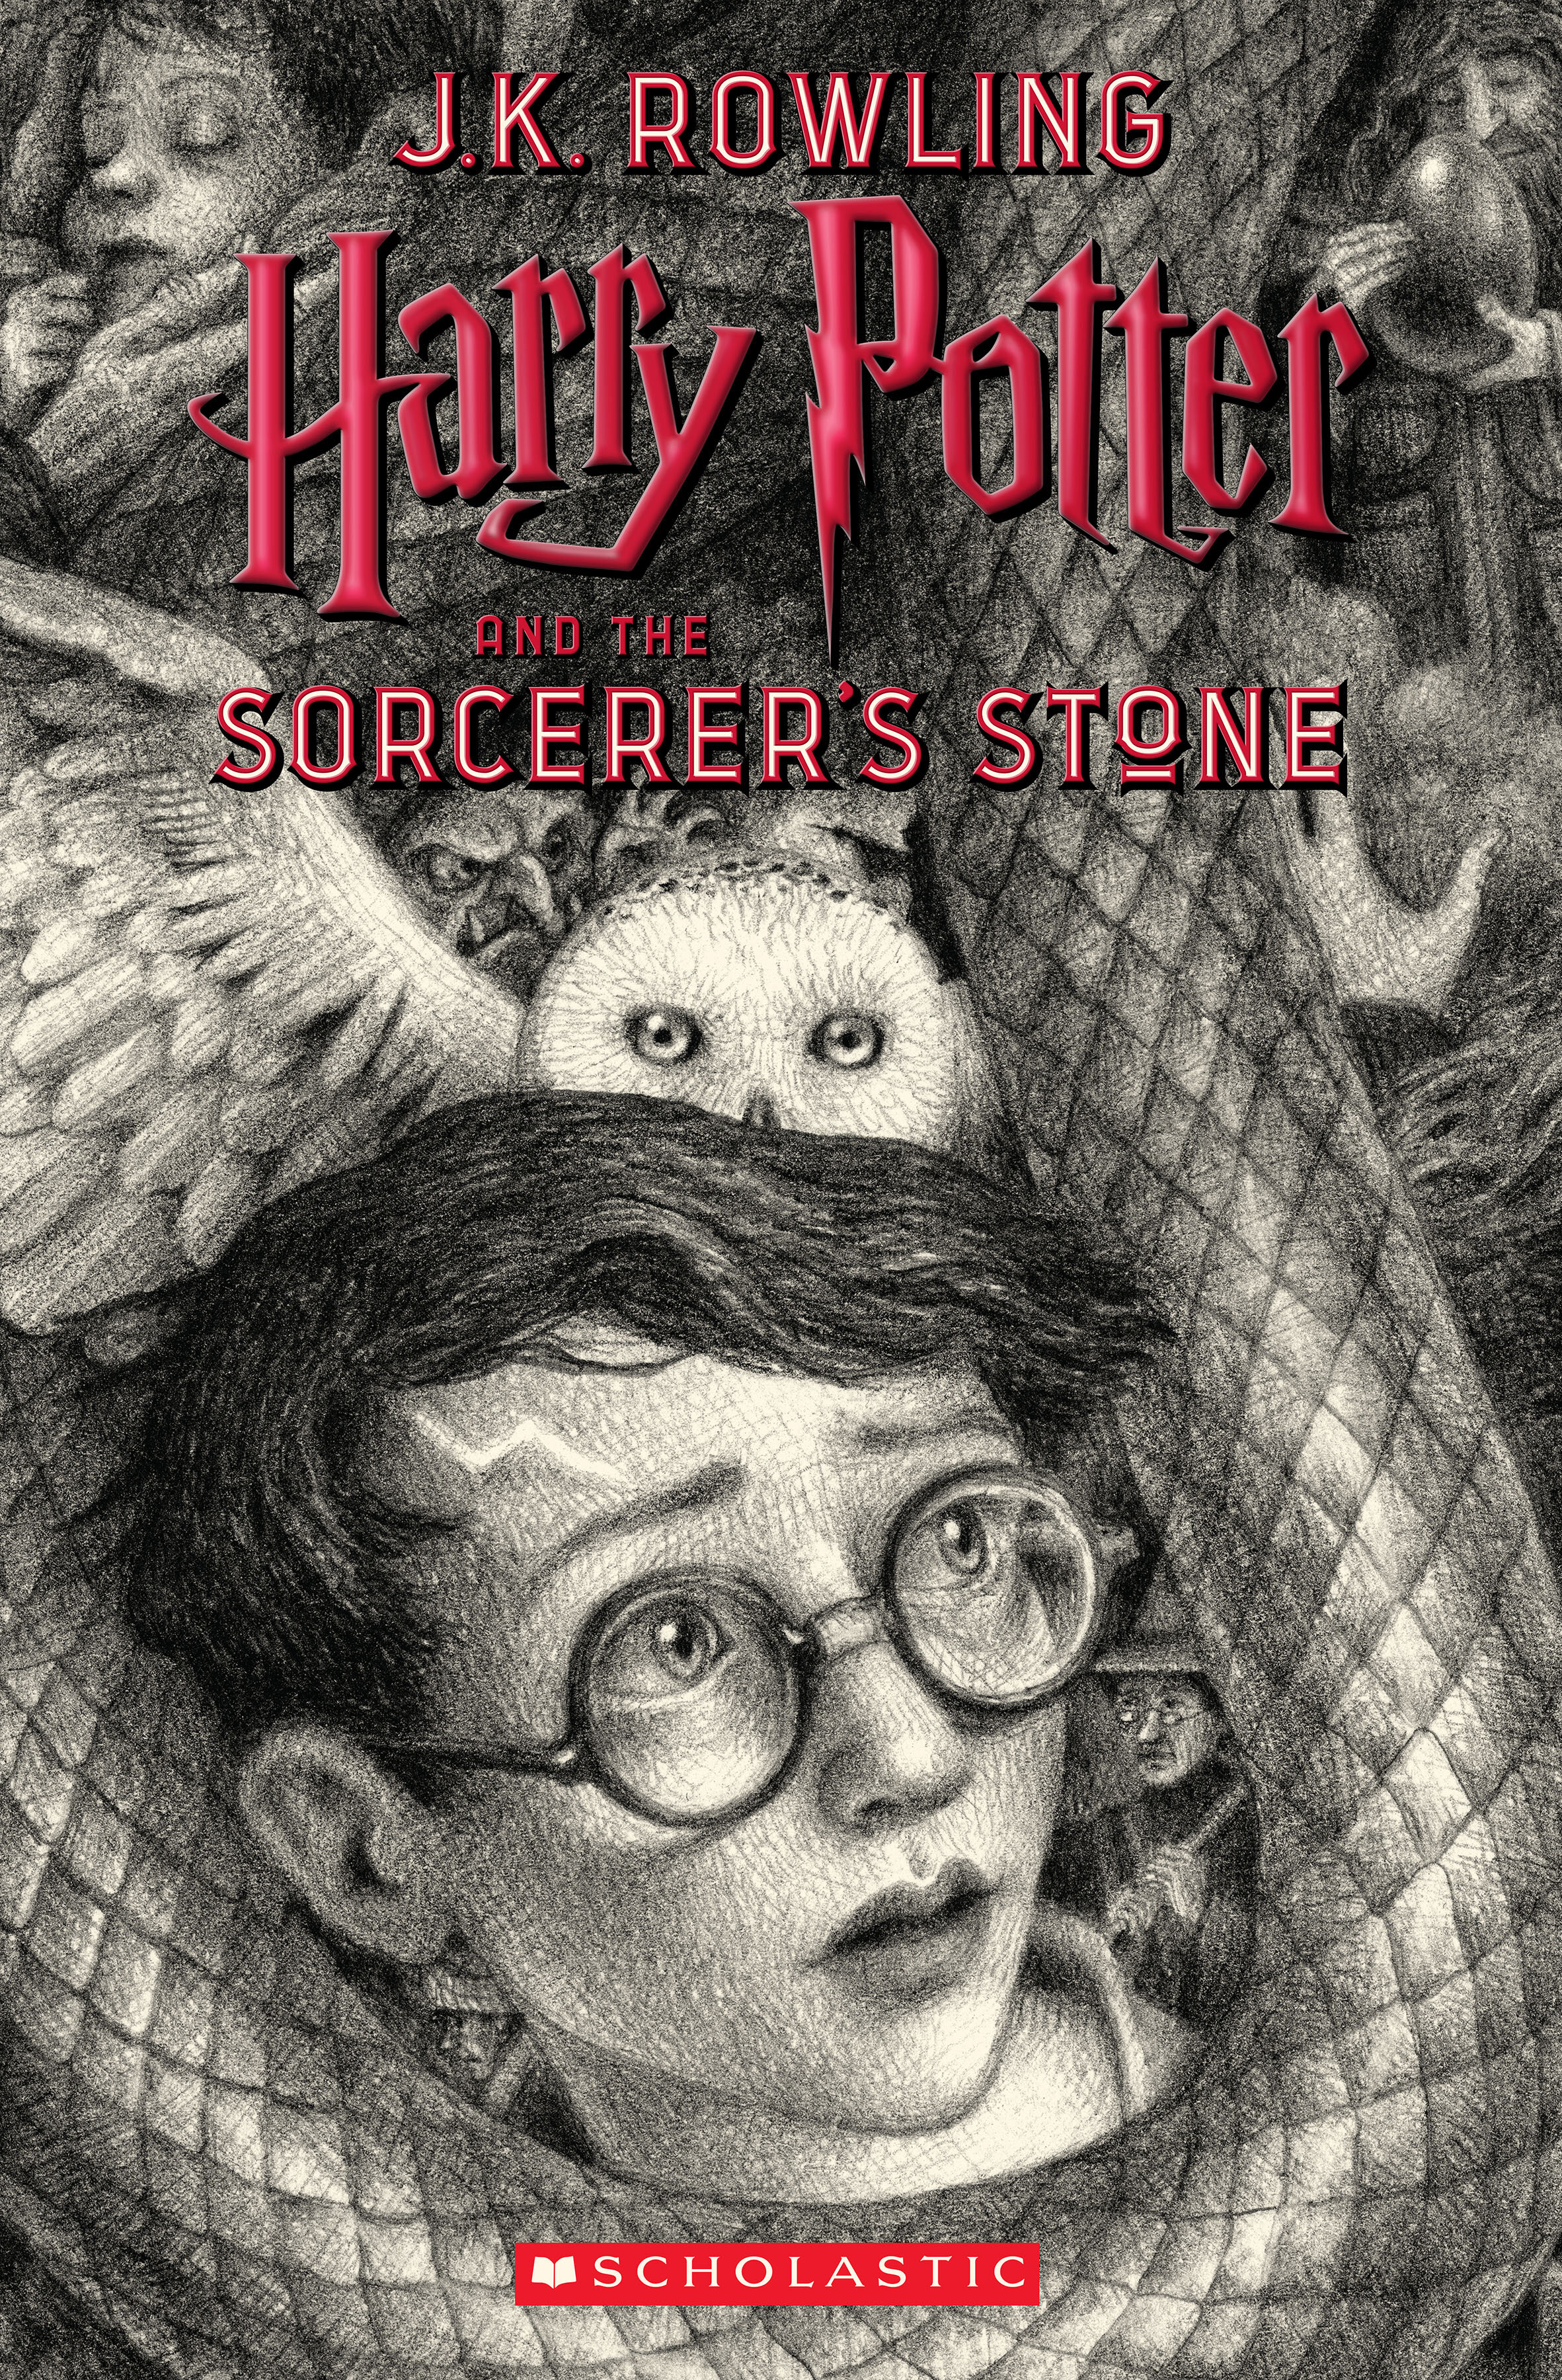 Harry Potter : 20 ans et une édition collector !